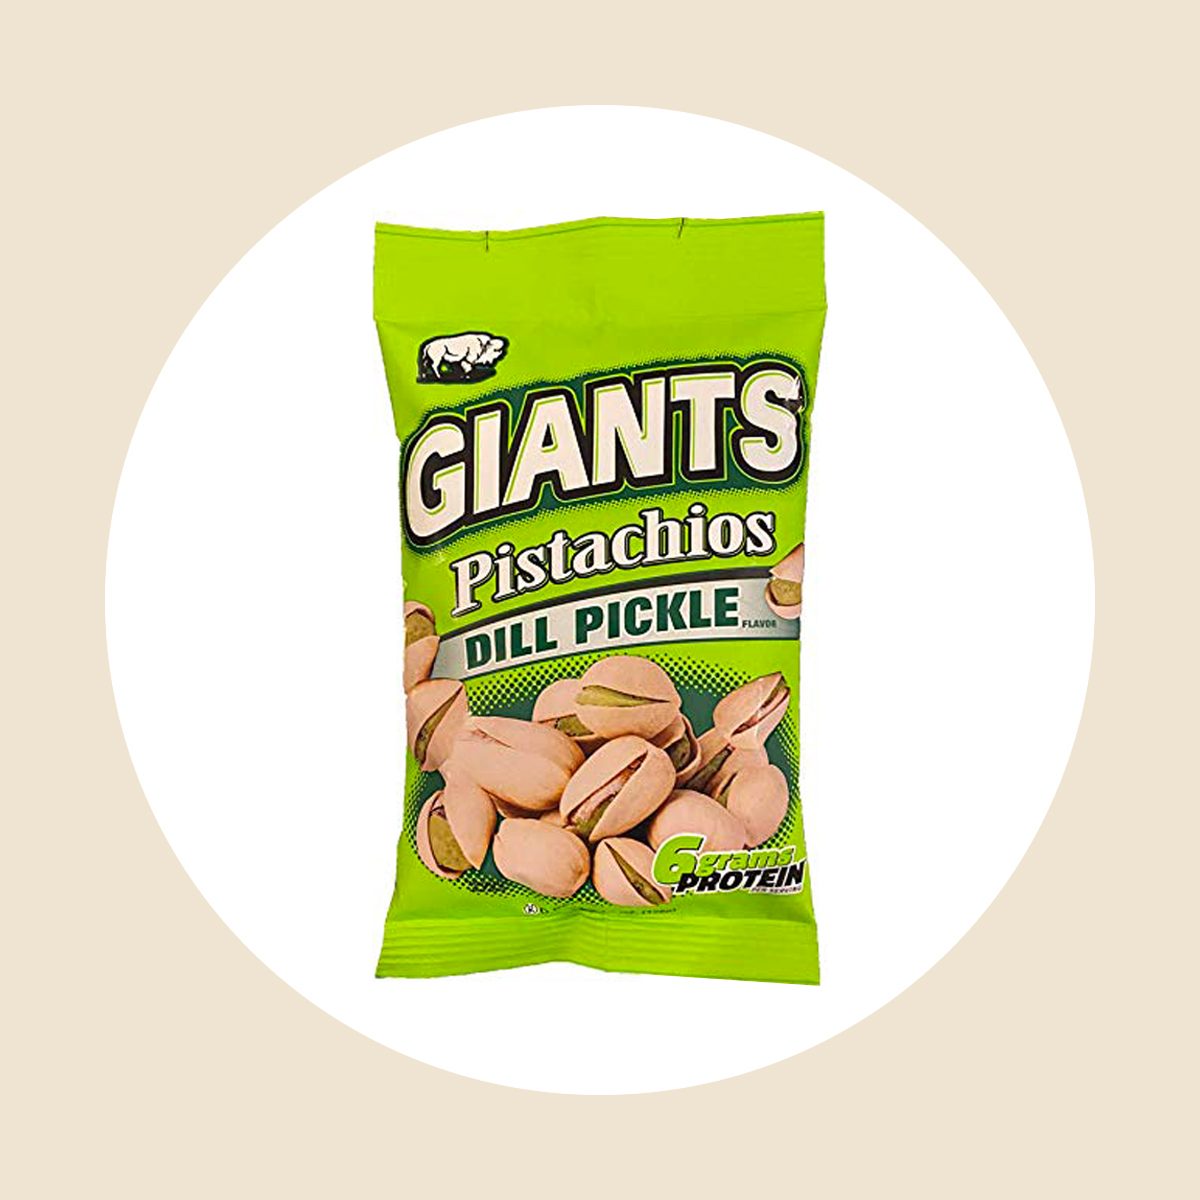 Giants Dill Pickle Pistachios Ecomm Amazon.com